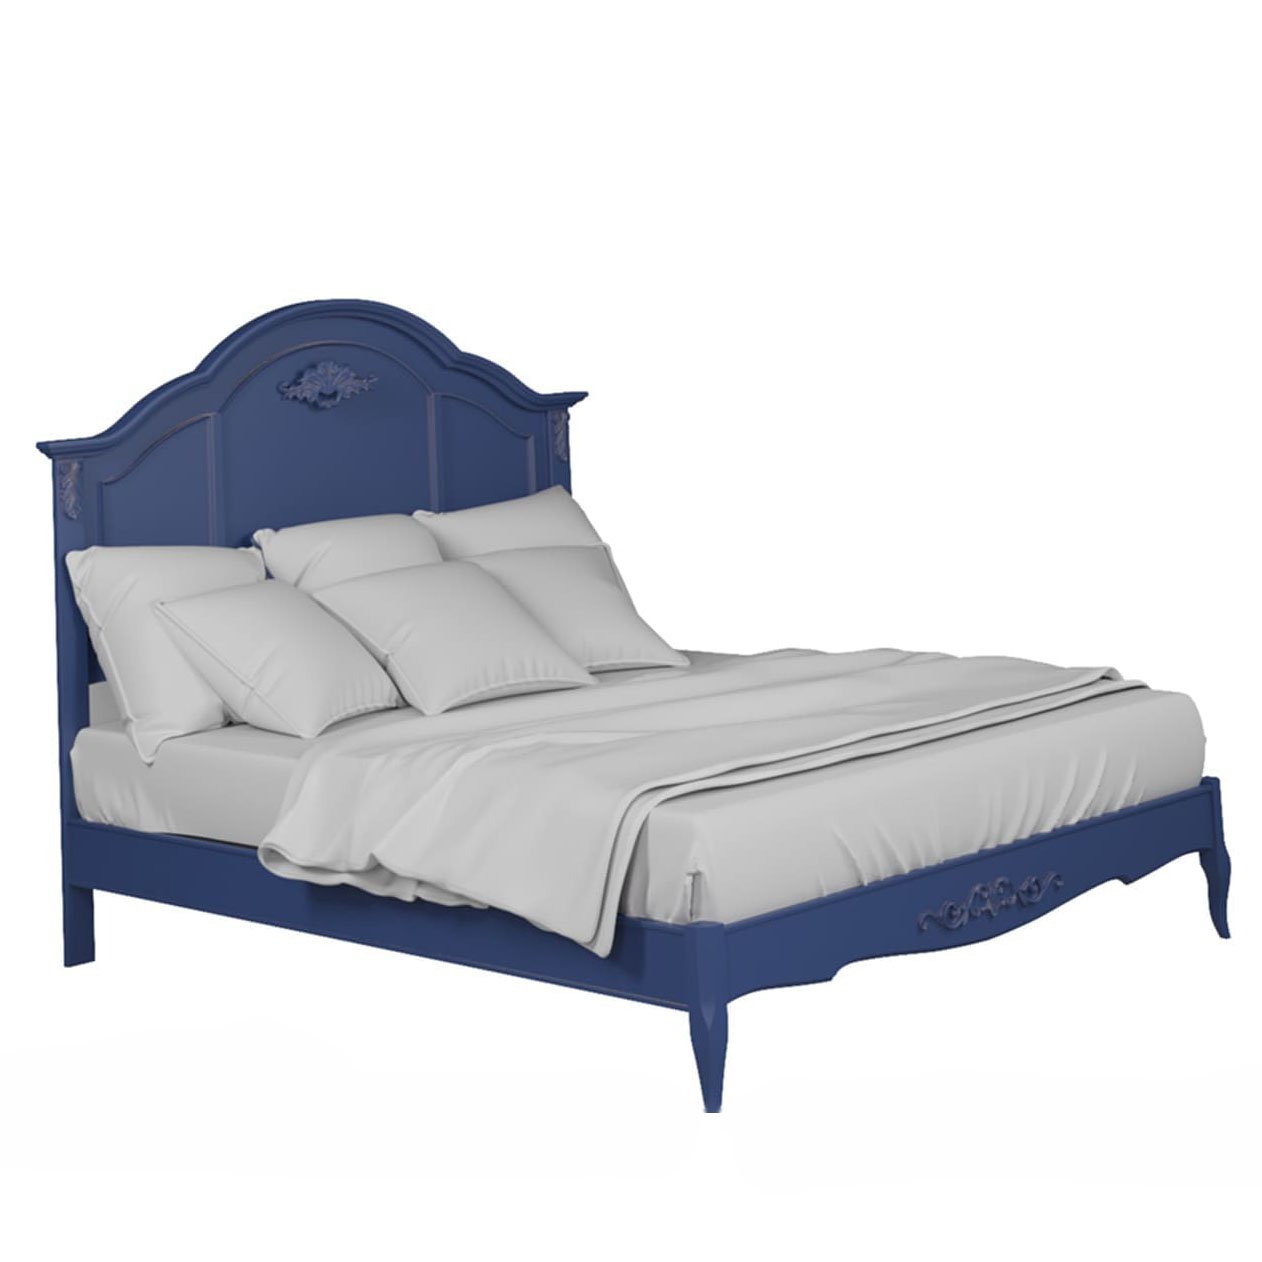 Кровать Aletan Provence, односпальная, 120x200 см, цвет: синий (B202IN)B202IN